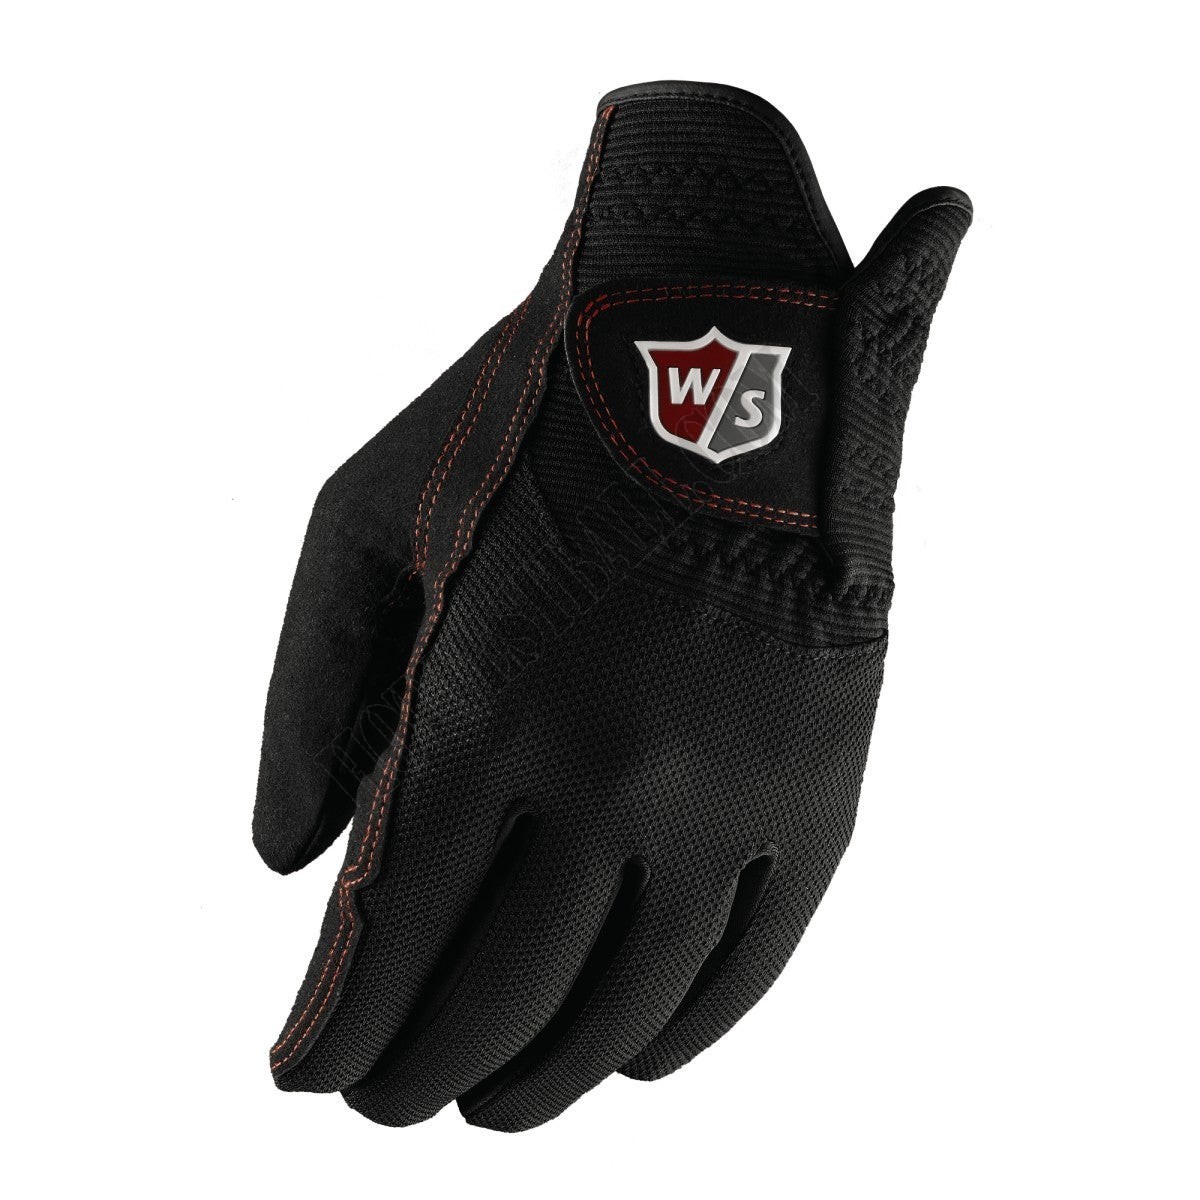 Wilson Staff Rain Golf Gloves - Wilson Discount Store - Wilson Staff Rain Golf Gloves - Wilson Discount Store